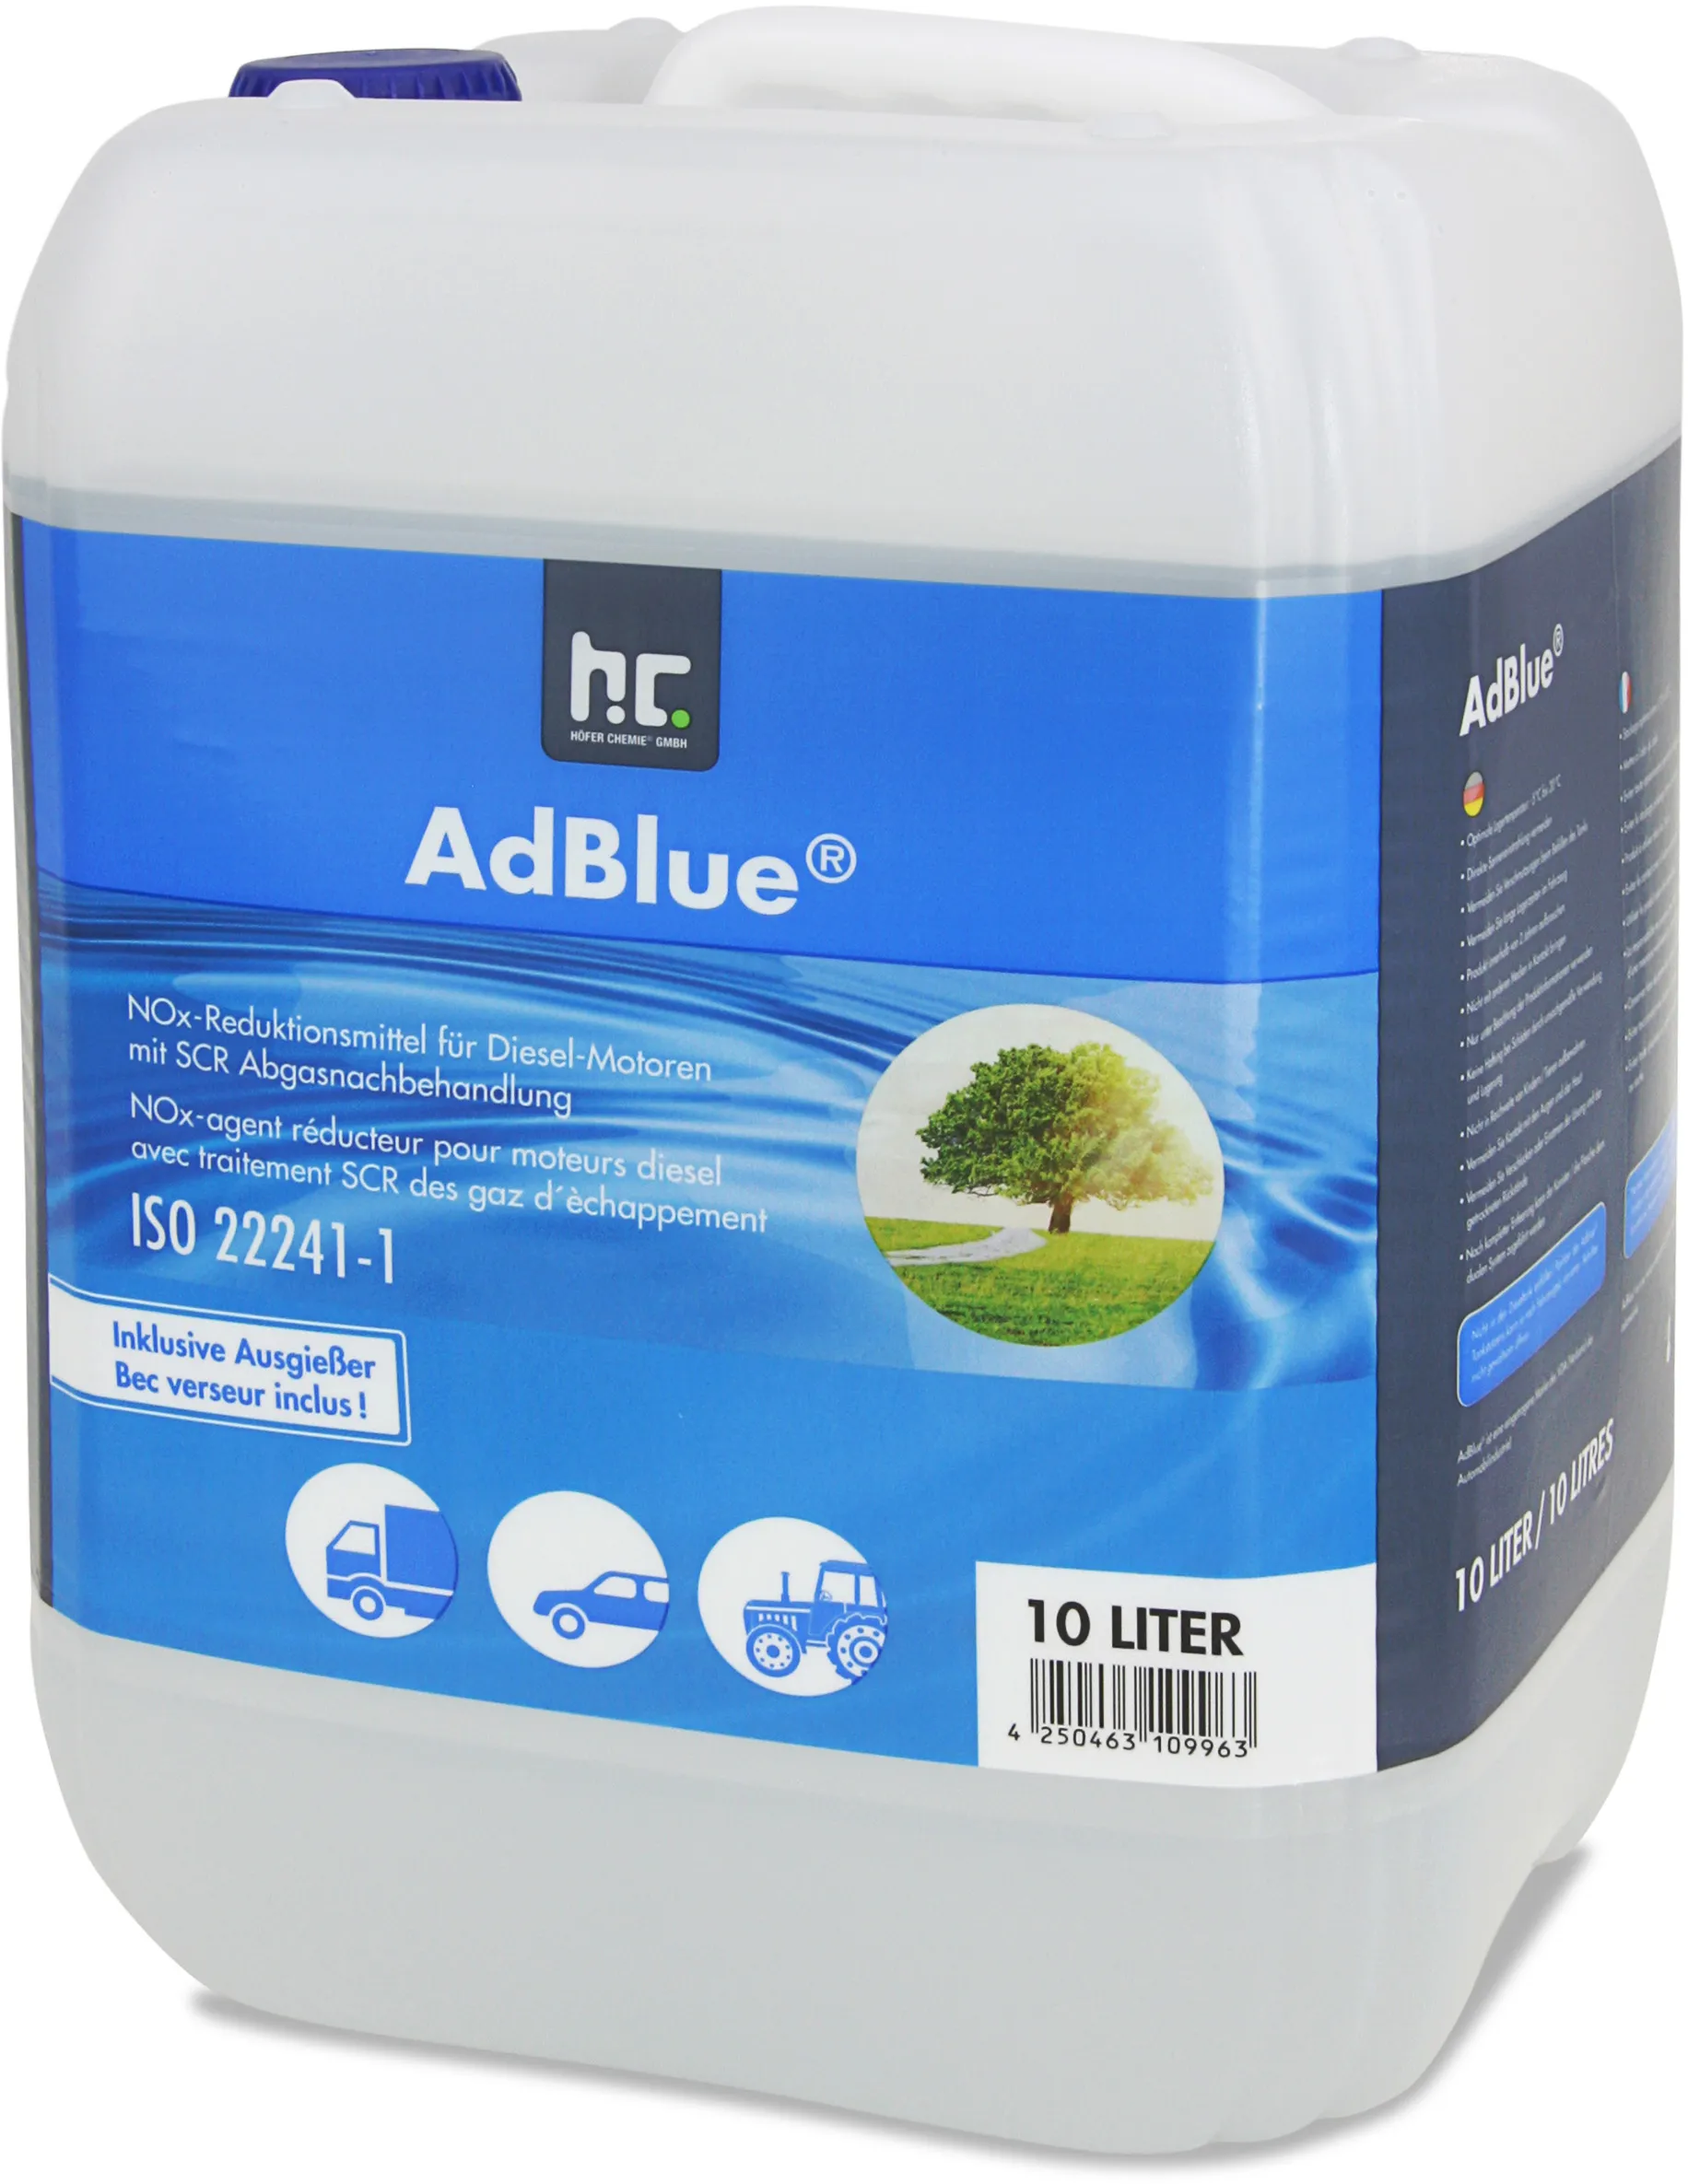 4 x 10L AdBlue - l'écologie par Höfer Chemie